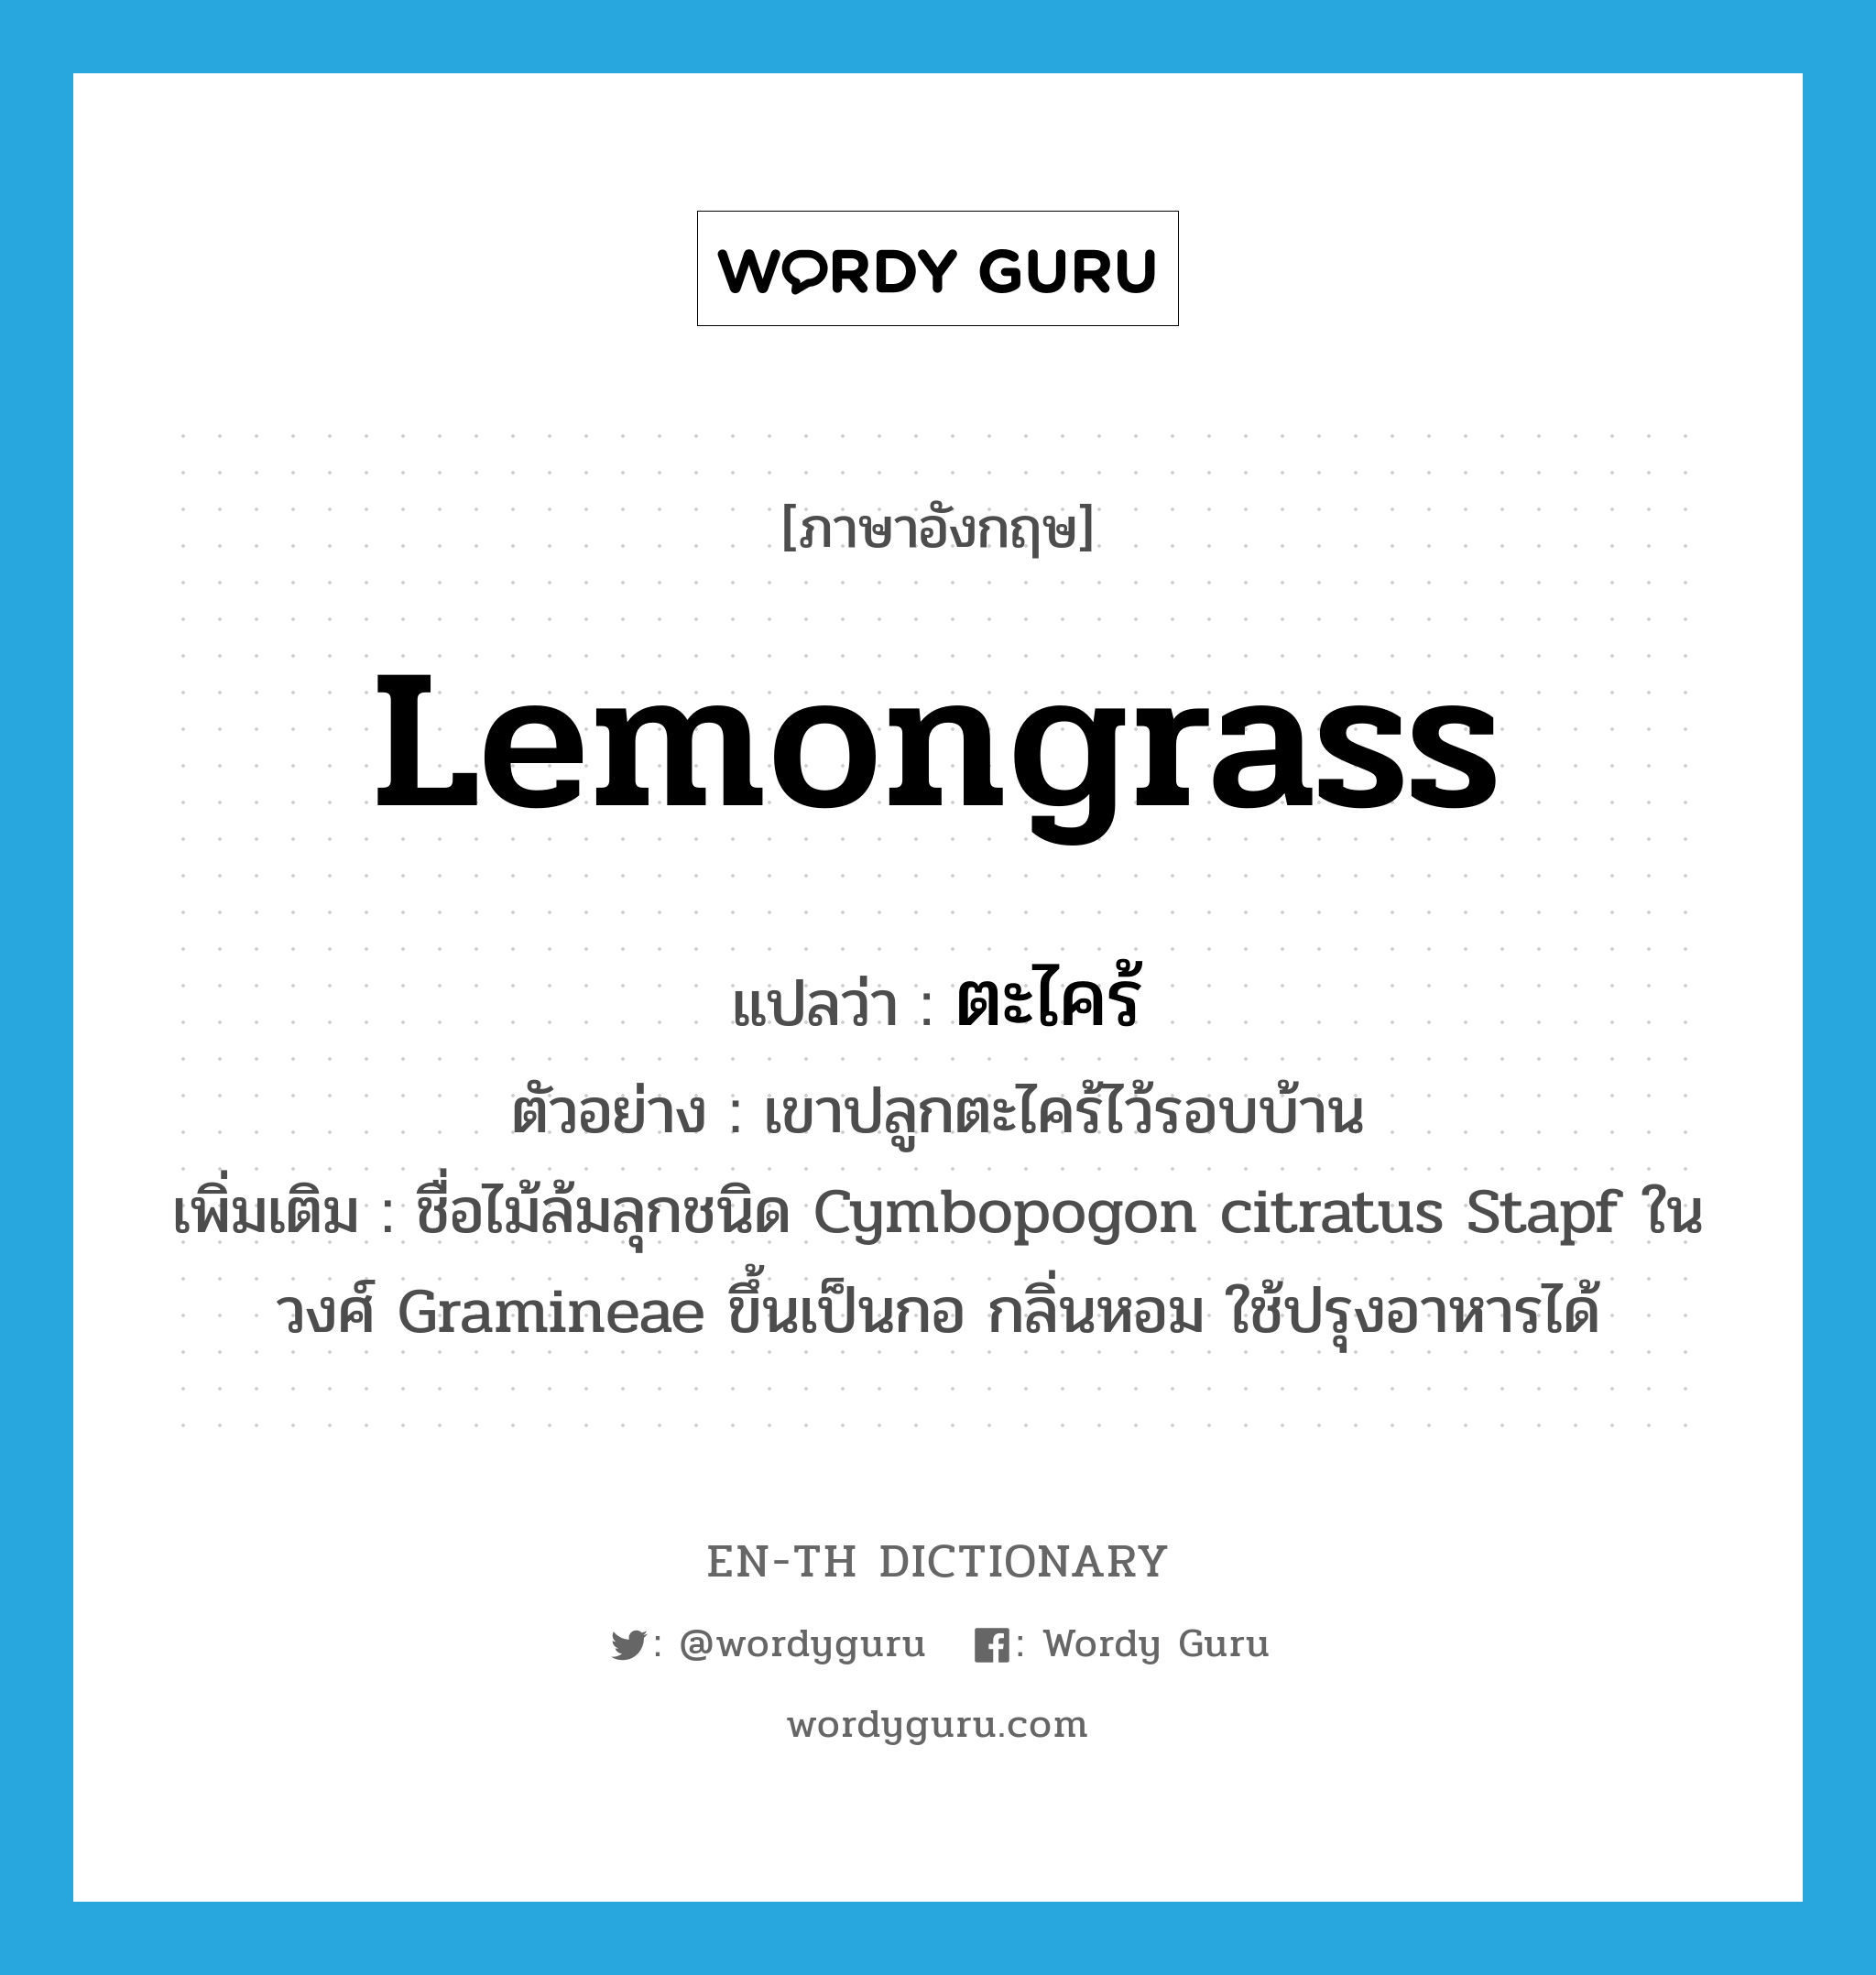 ตะไคร้ ภาษาอังกฤษ?, คำศัพท์ภาษาอังกฤษ ตะไคร้ แปลว่า lemongrass ประเภท N ตัวอย่าง เขาปลูกตะไคร้ไว้รอบบ้าน เพิ่มเติม ชื่อไม้ล้มลุกชนิด Cymbopogon citratus Stapf ในวงศ์ Gramineae ขึ้นเป็นกอ กลิ่นหอม ใช้ปรุงอาหารได้ หมวด N